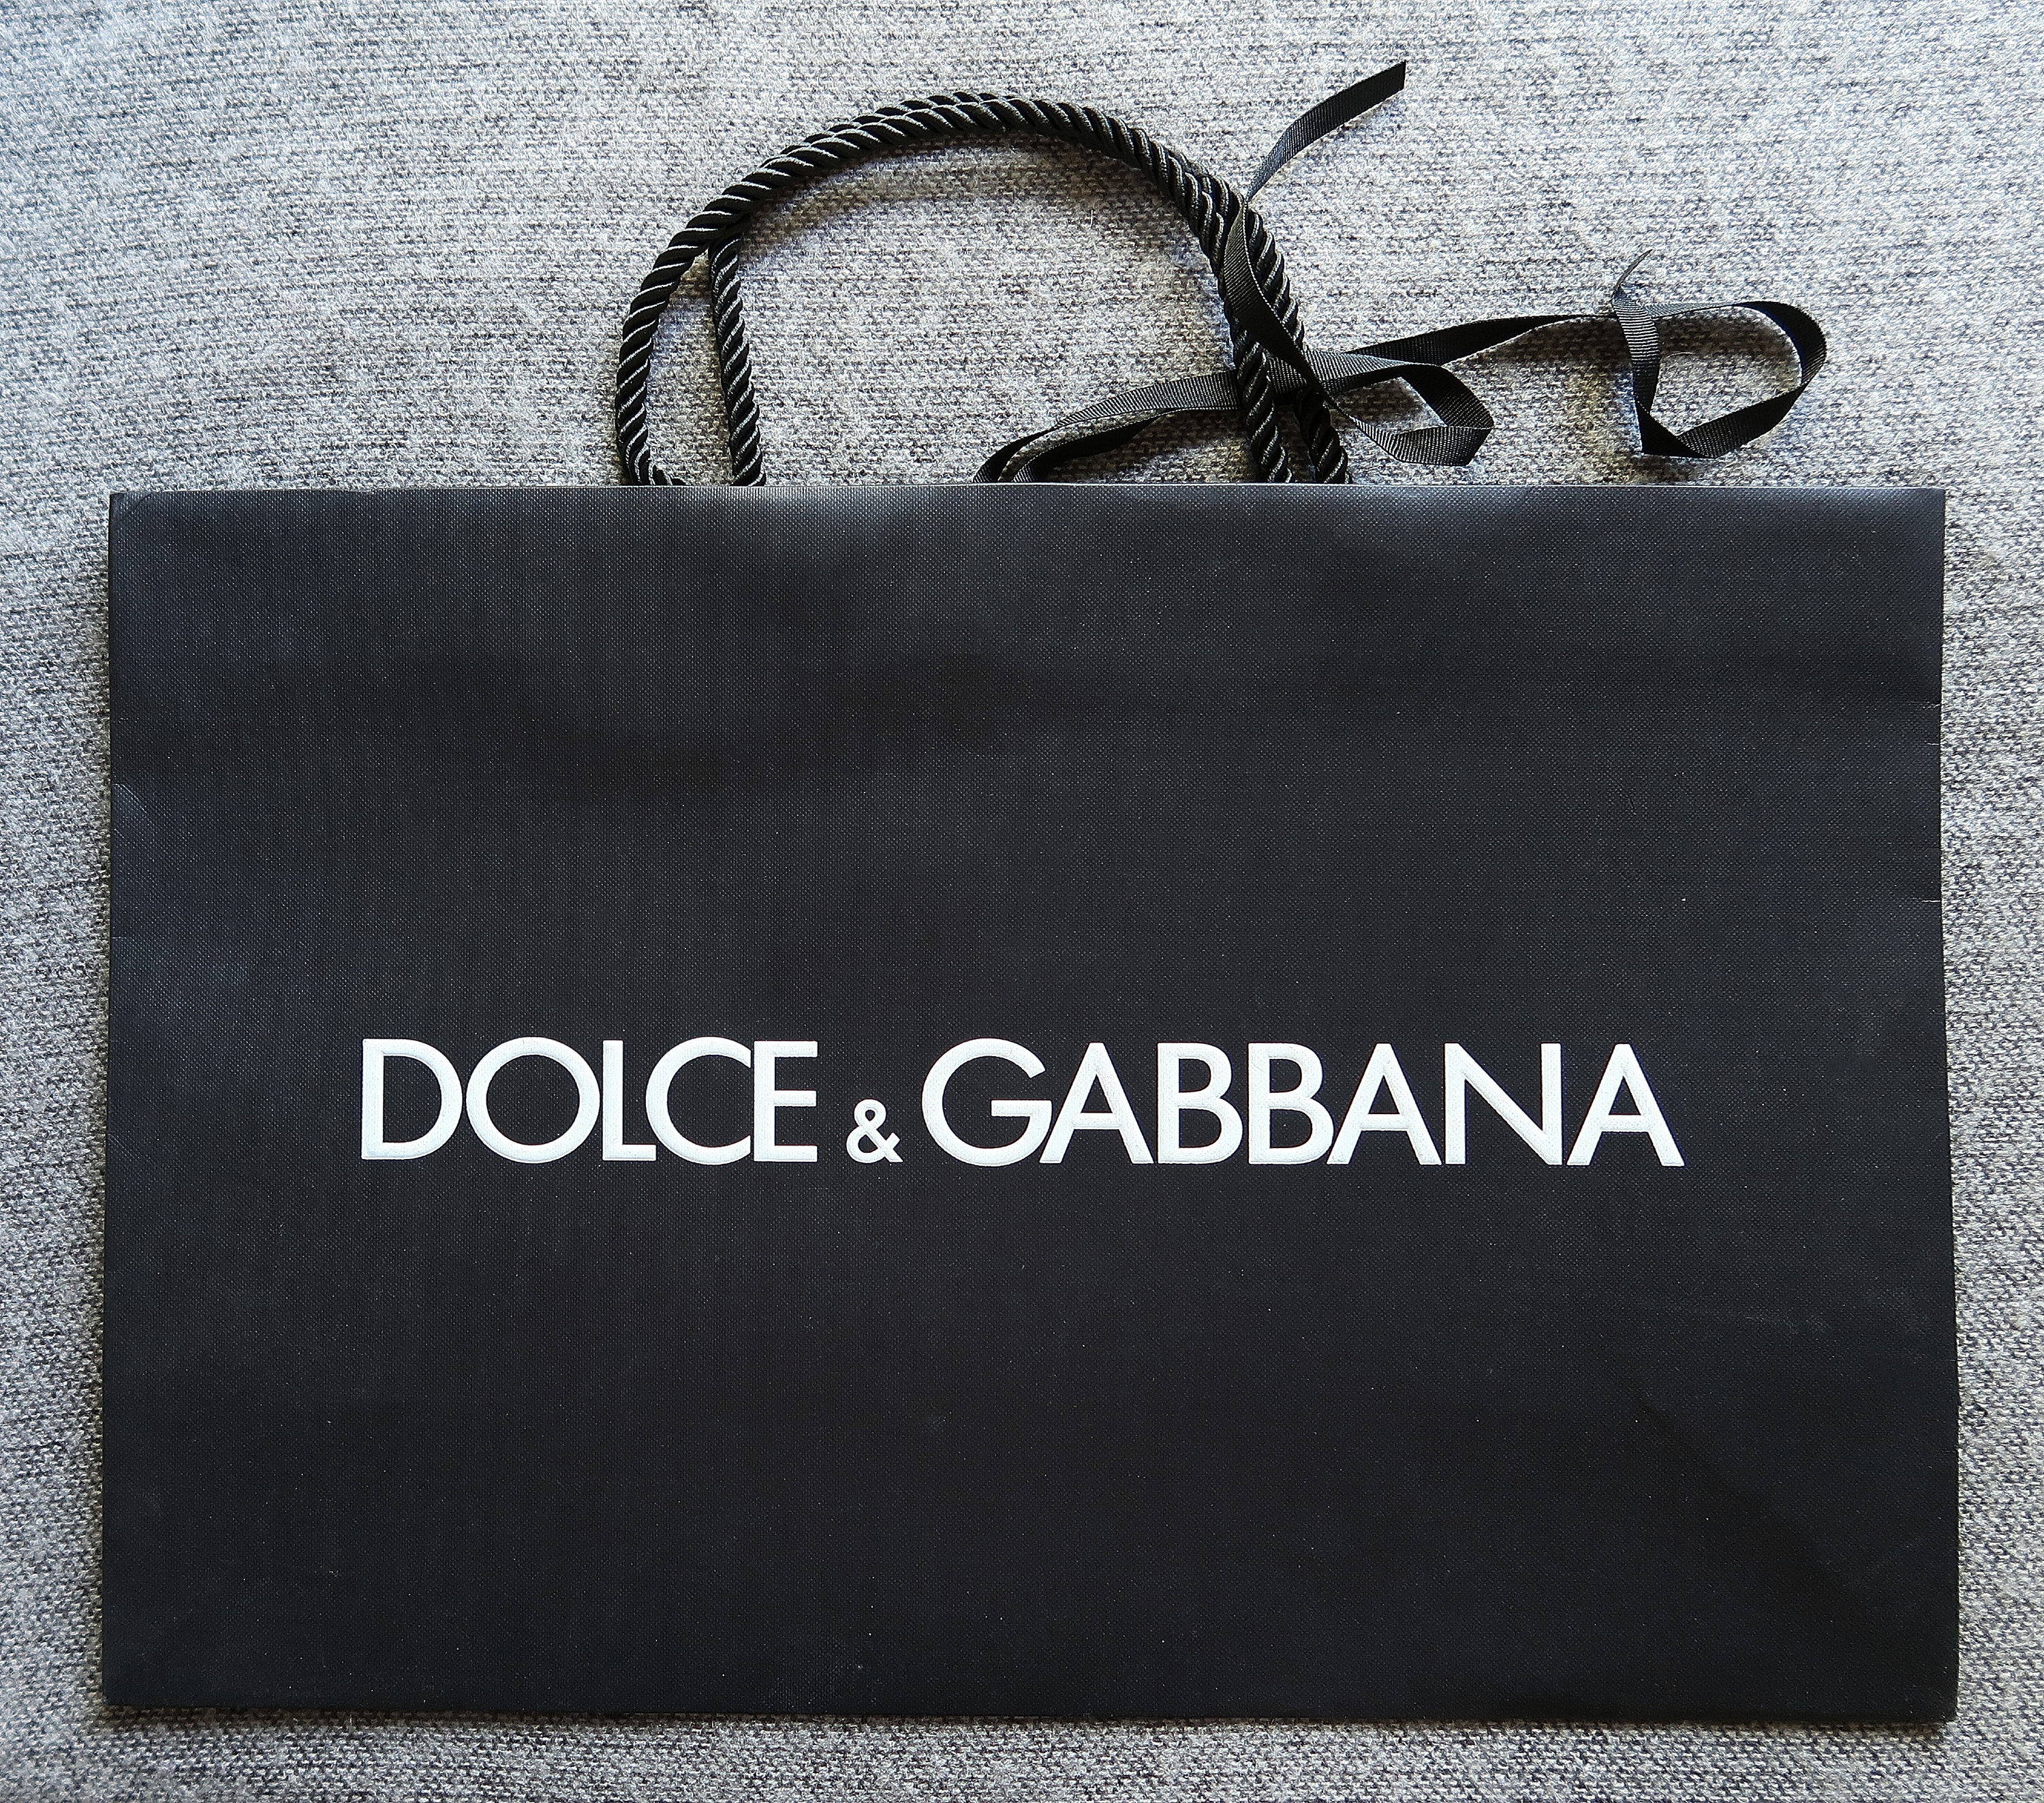 Dolce and Gabbana Purse -  Canada